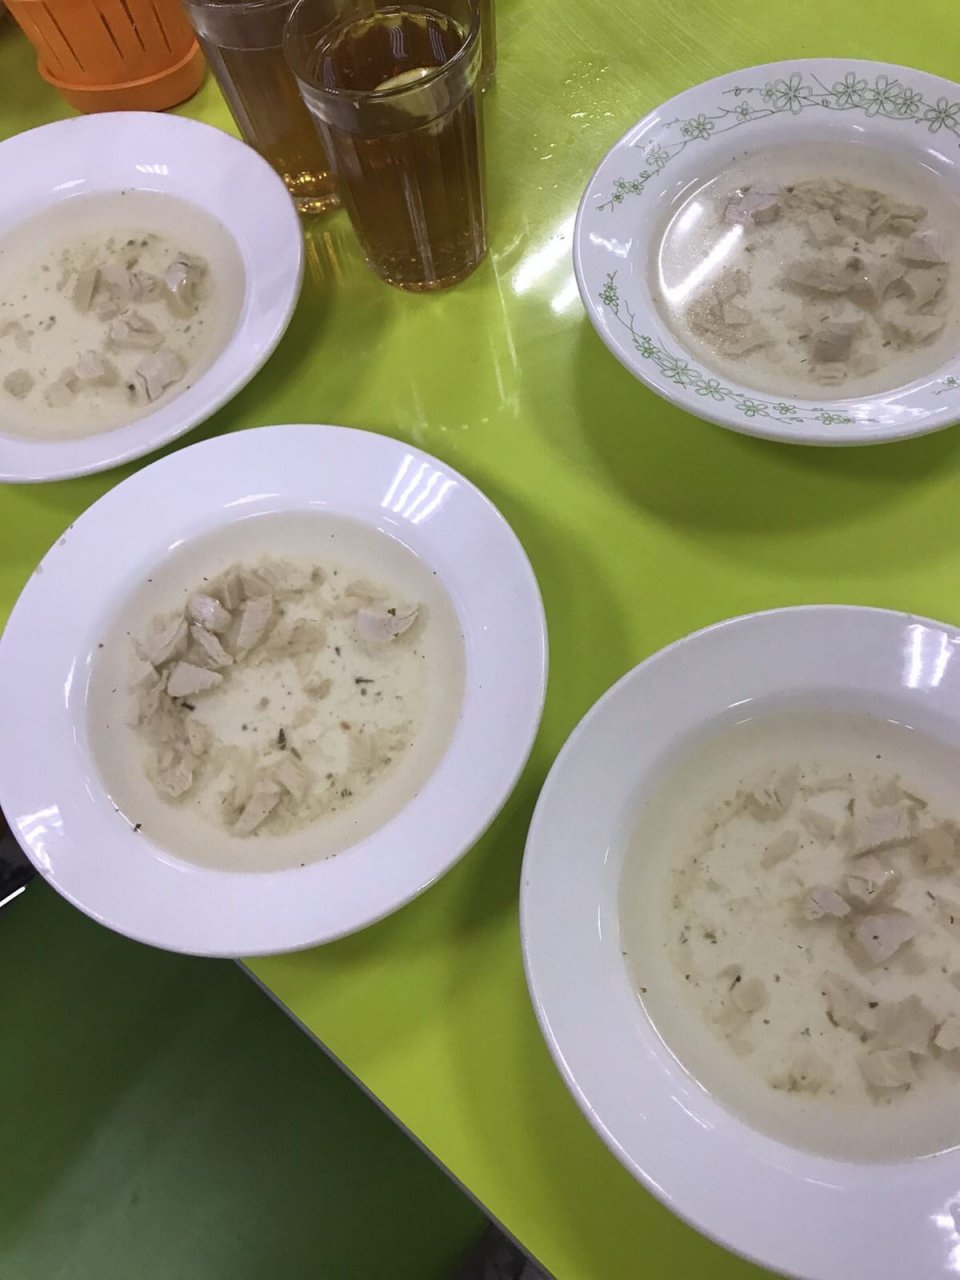 "Как заключенных кормят": обед в нижегородской школе шокировал пользователей